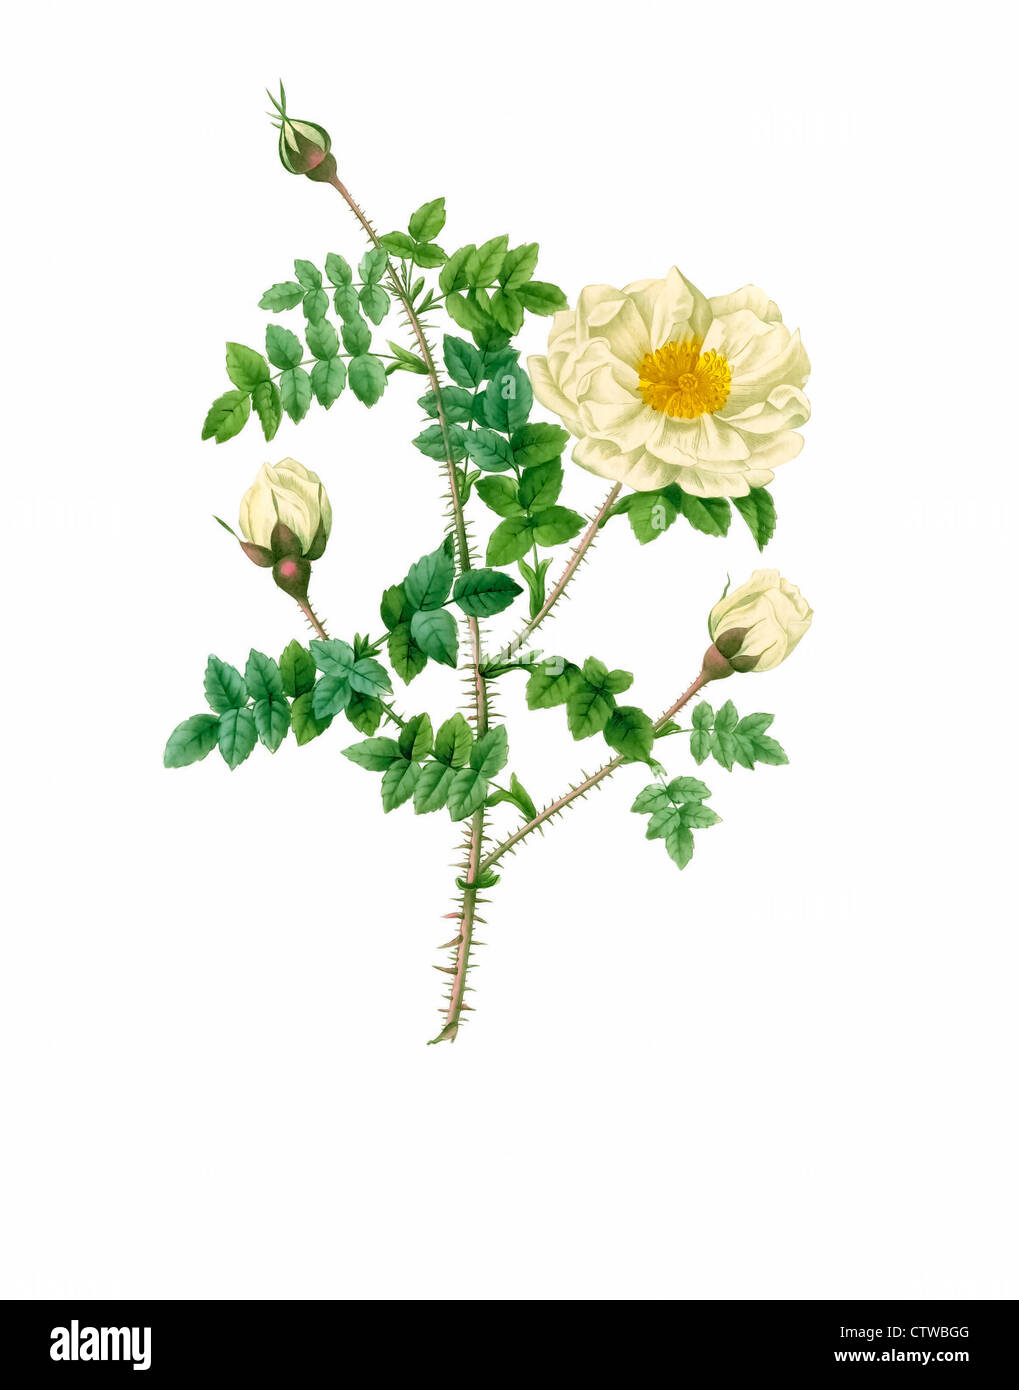 Illustrazione di rosa pimpinellifolia alba flore multiplici Foto Stock